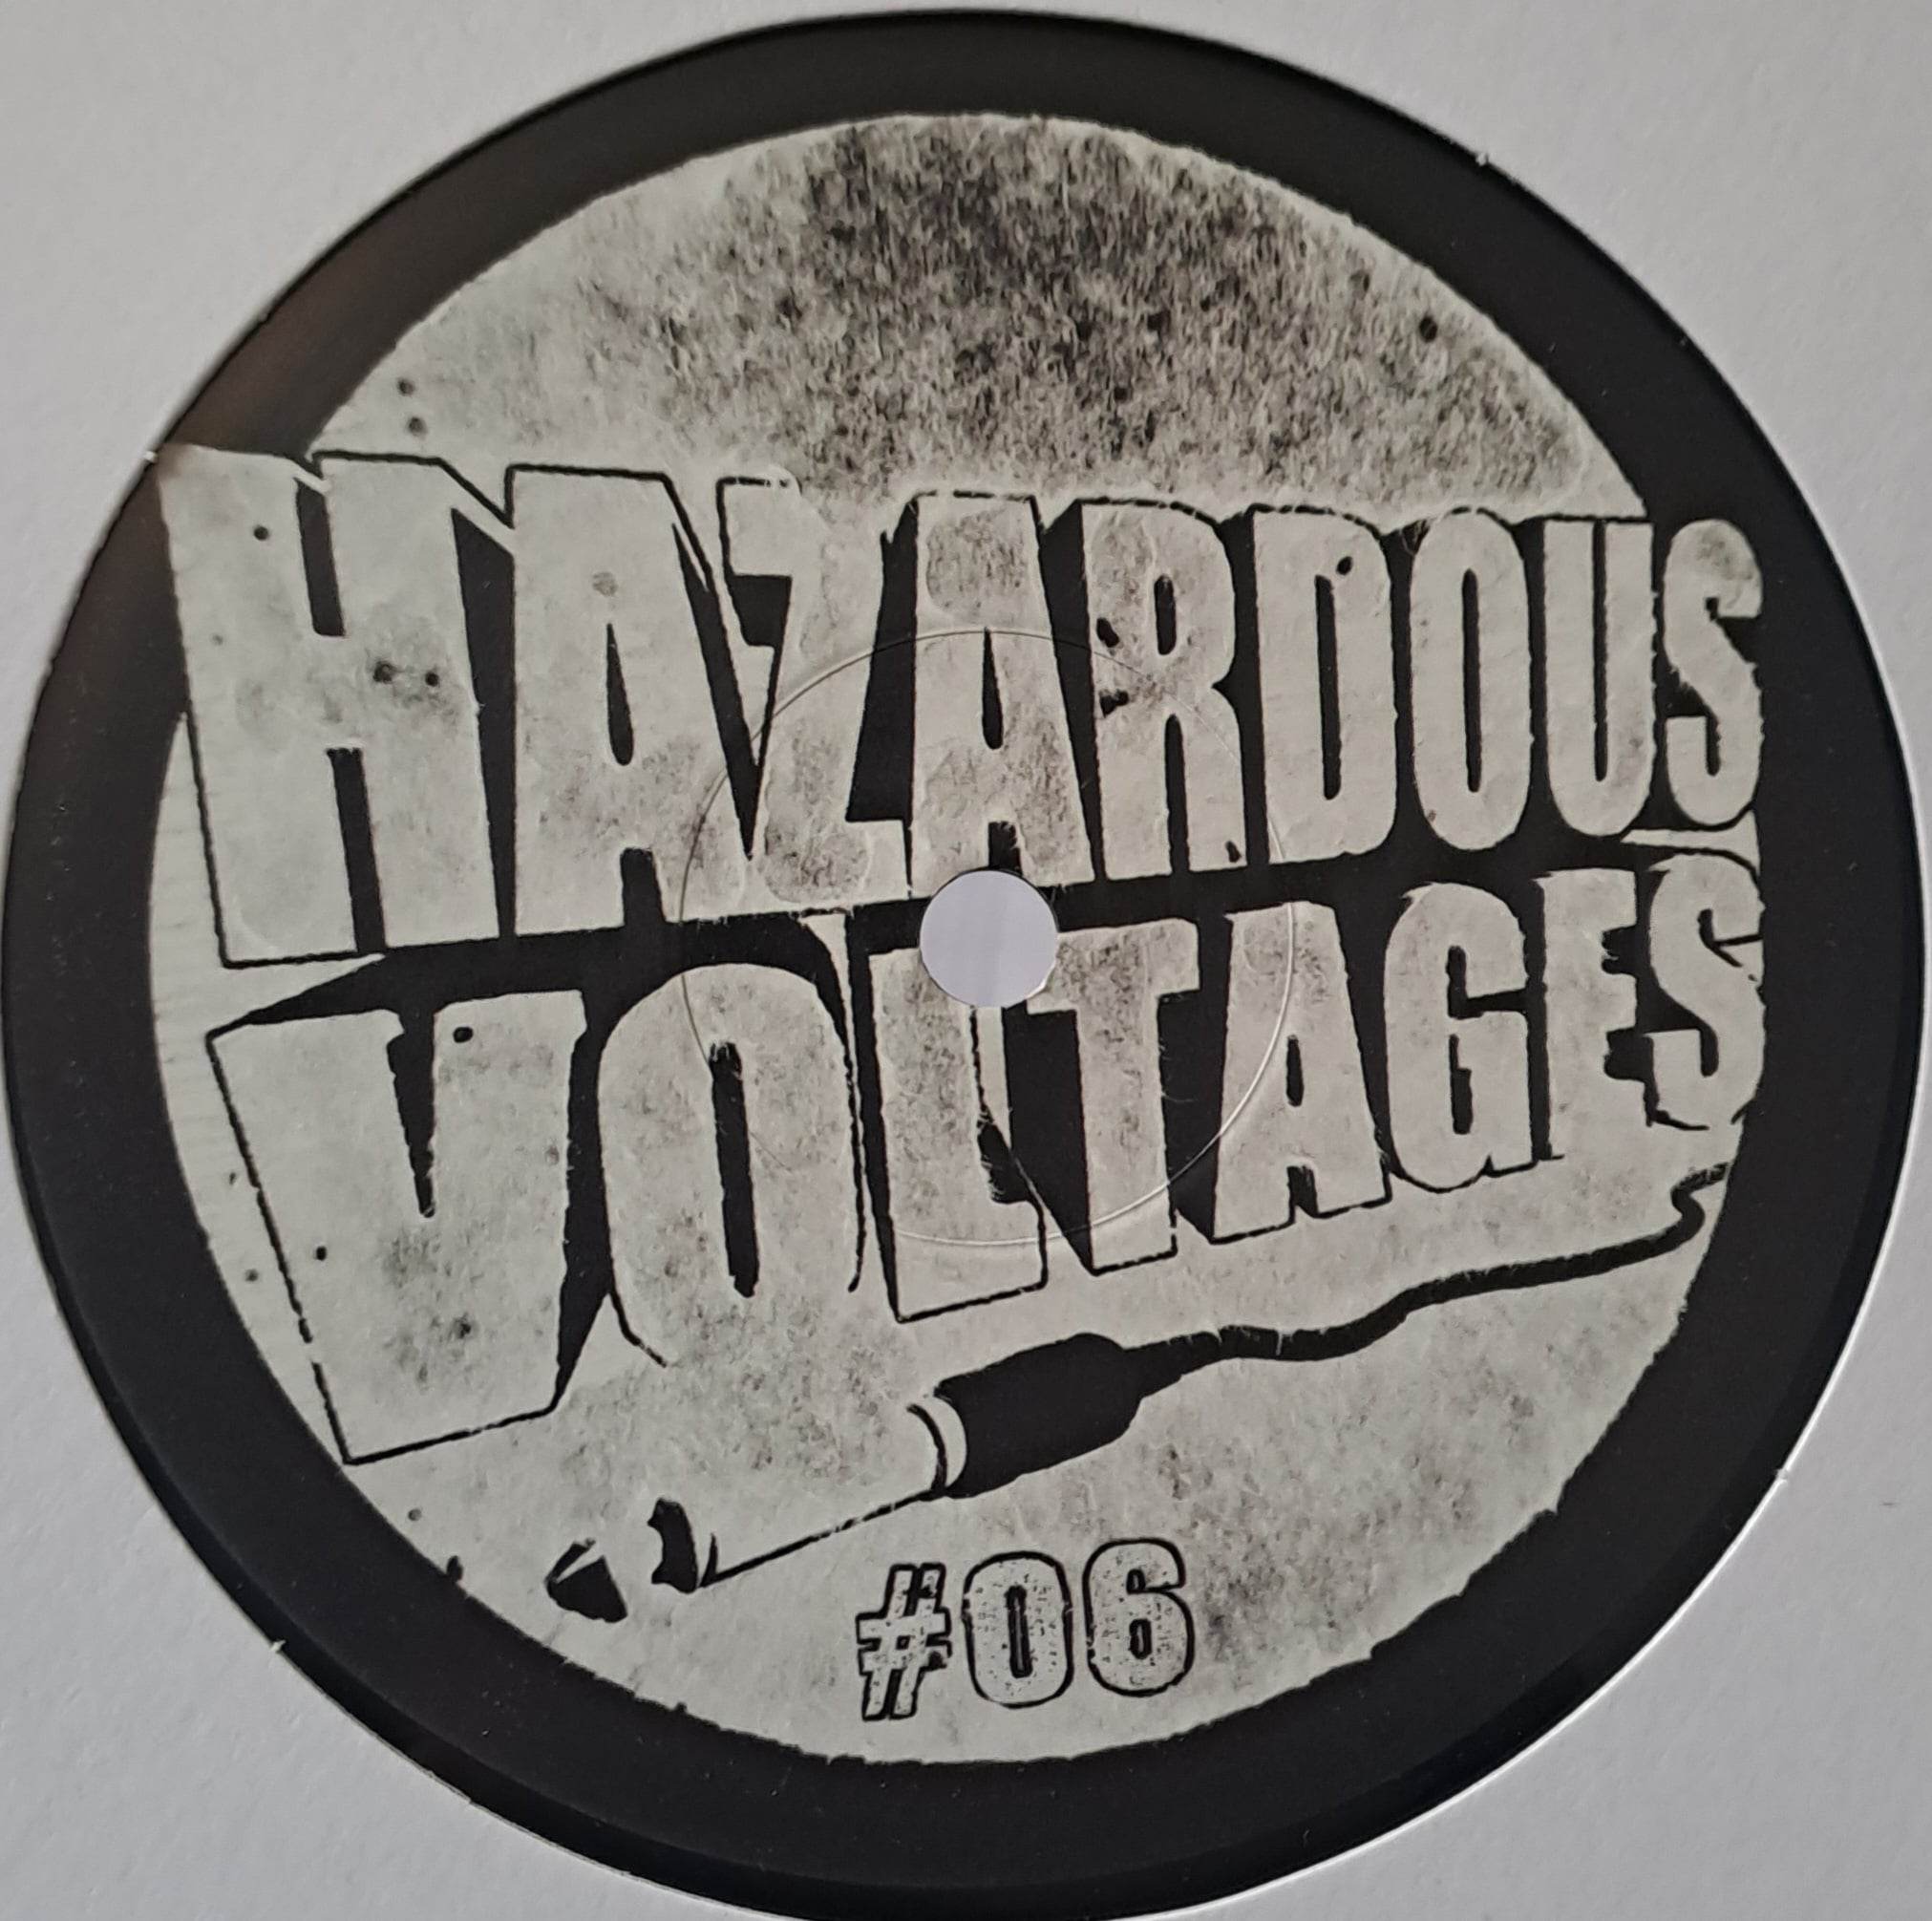 Hazardous Voltages 06 (toute dernière copie en stock) - vinyle acidcore